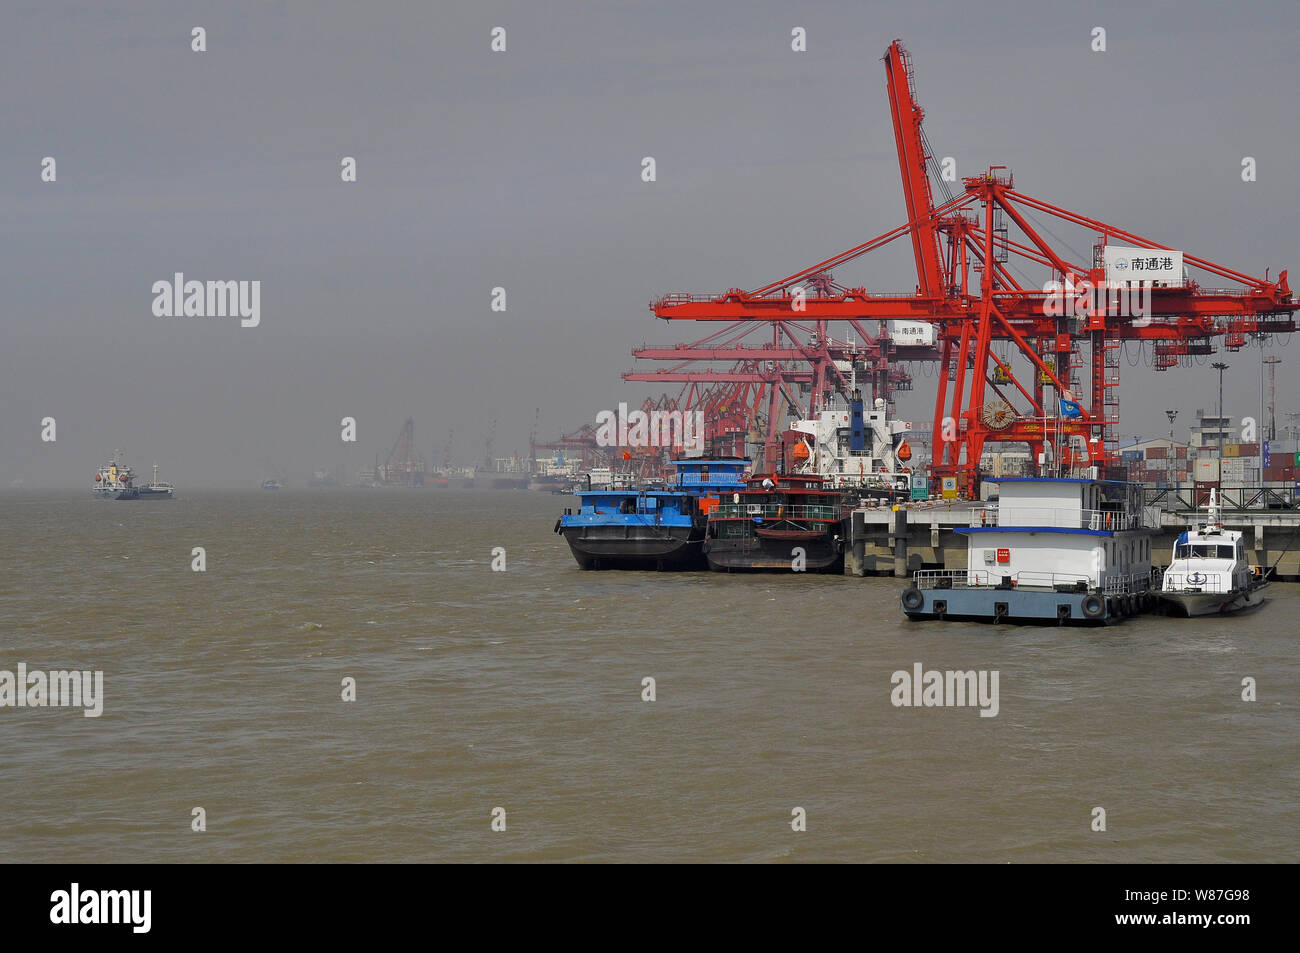 Container ships/boats at the Yangtse river quayside Nantong China Stock Photo